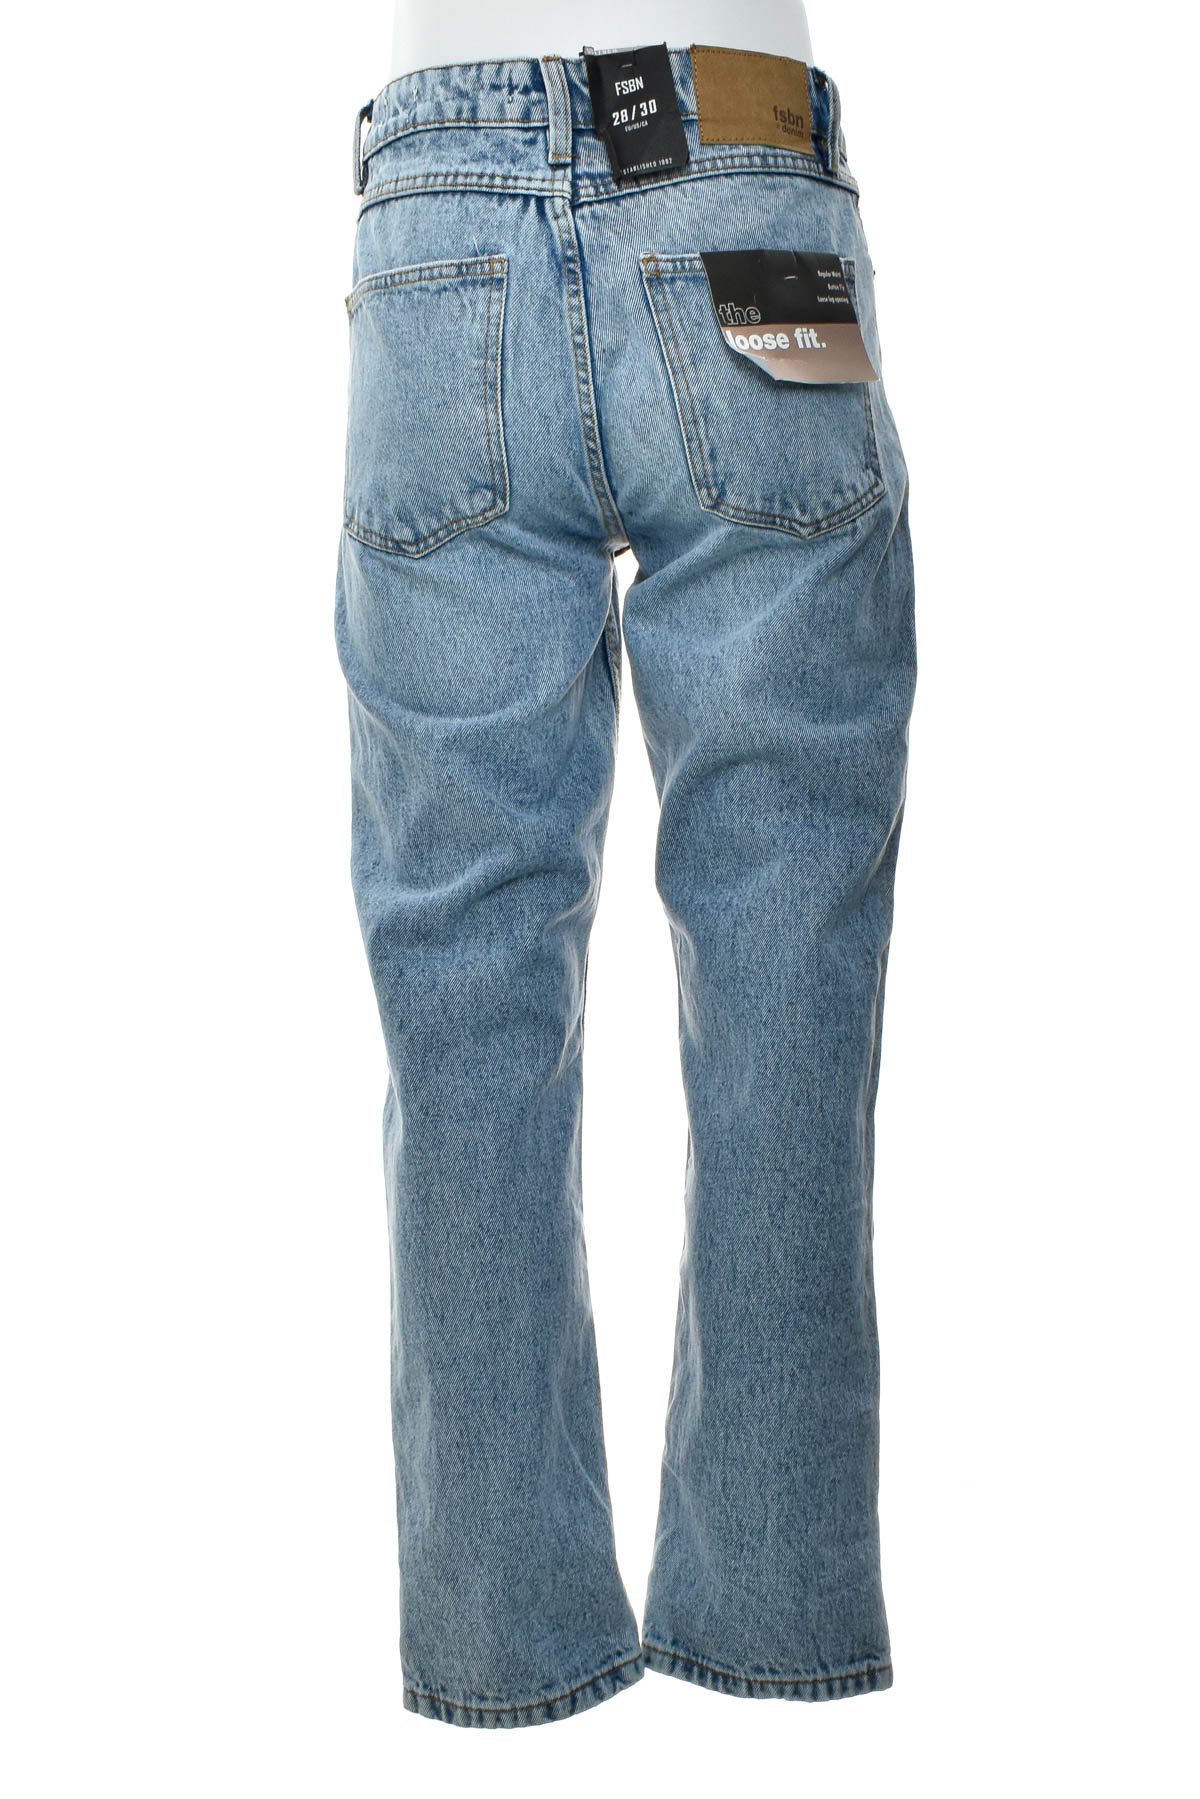 Men's jeans - FSBN - 1